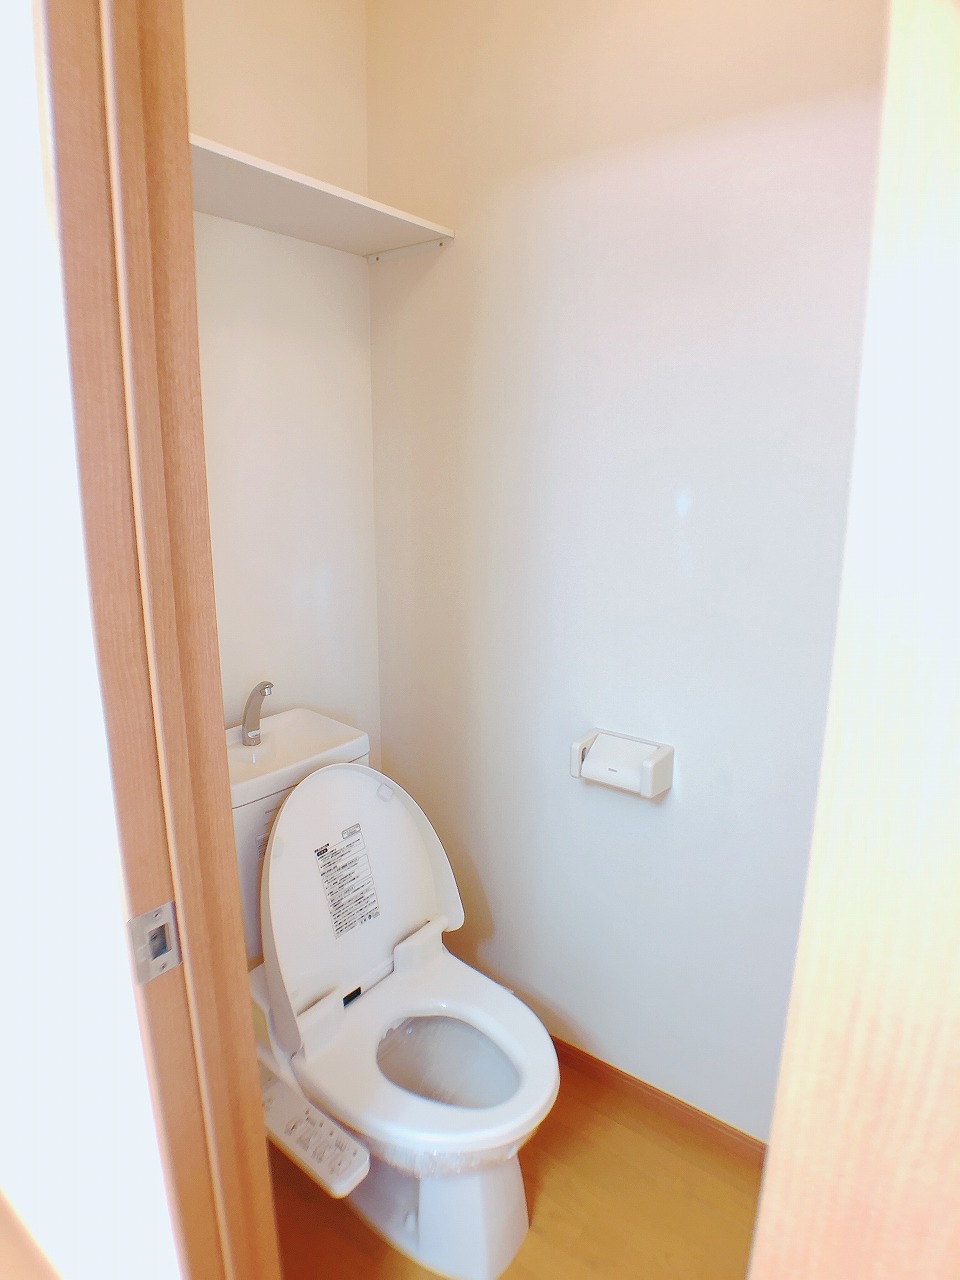 【姶良市平松のアパートのトイレ】